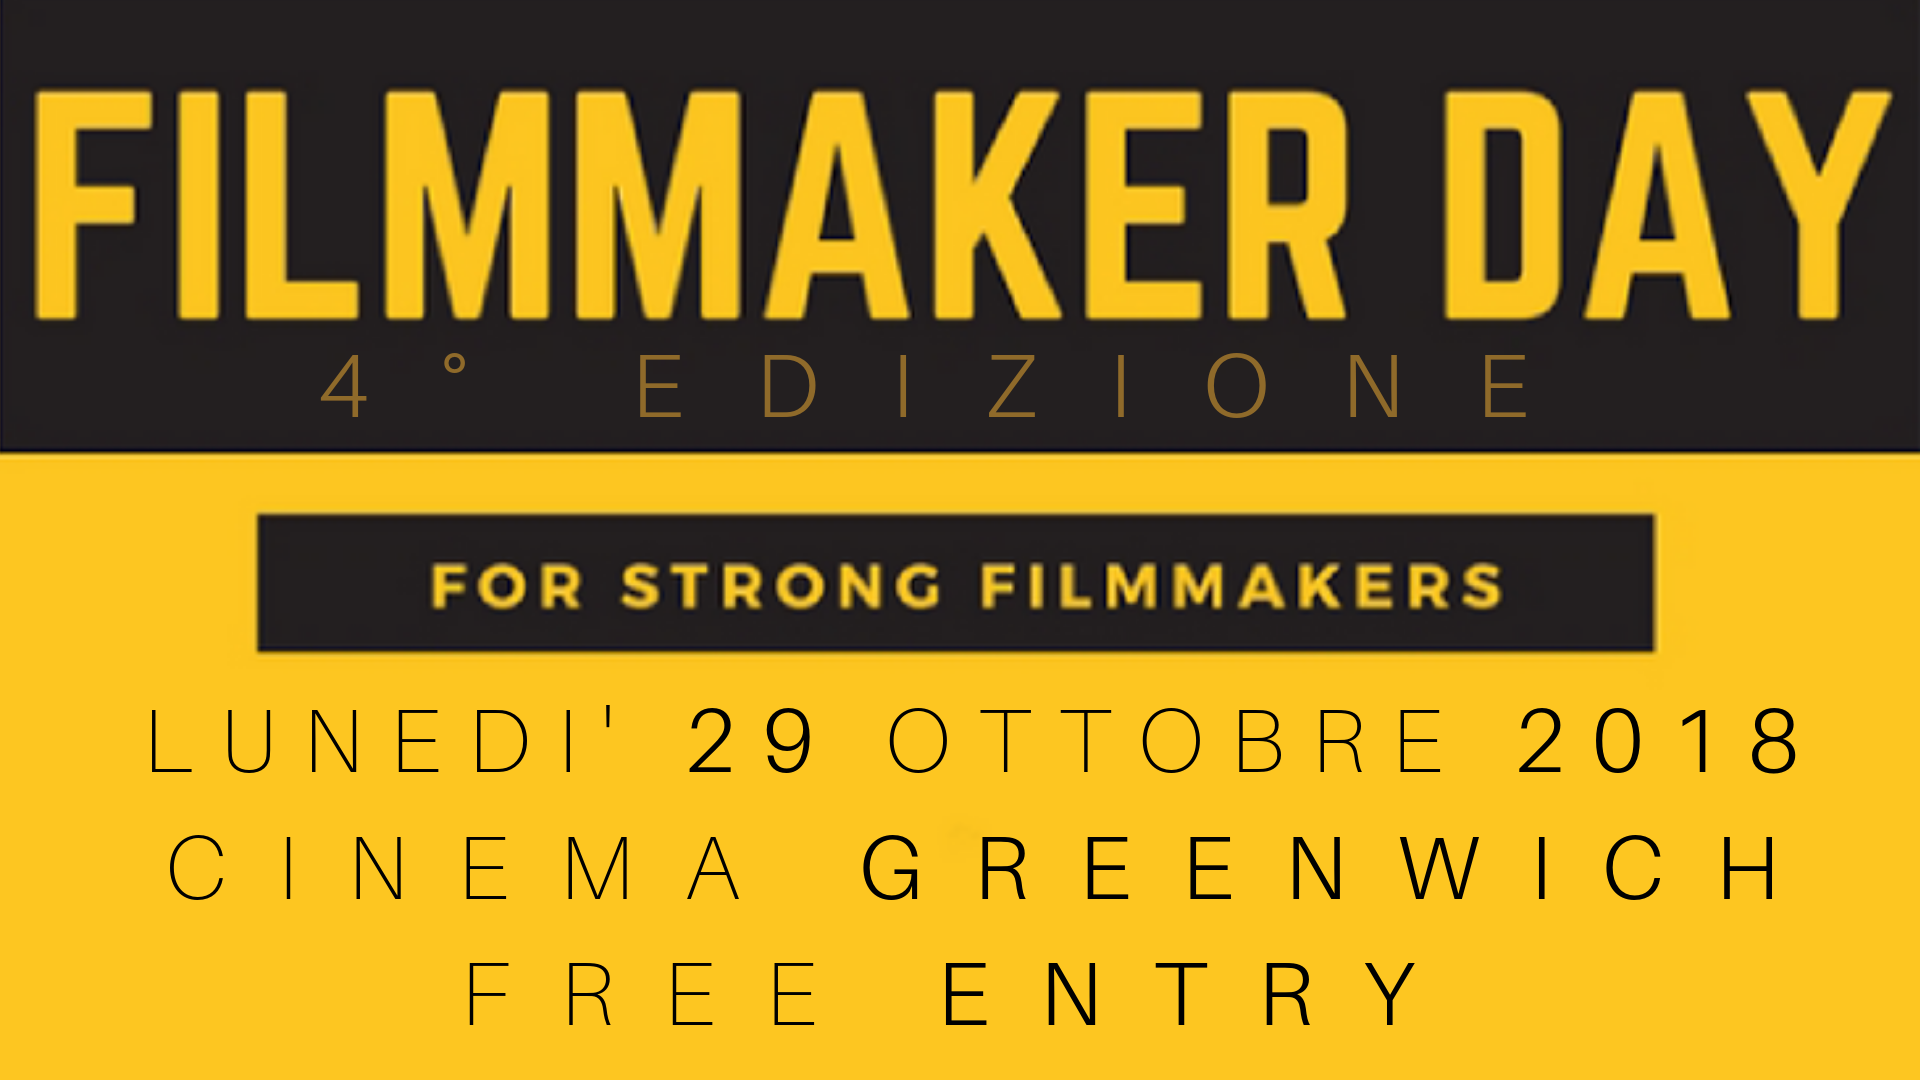 Il quarto Filmmaker Day, lunedì 29 ottobre al Cinema Greenwich